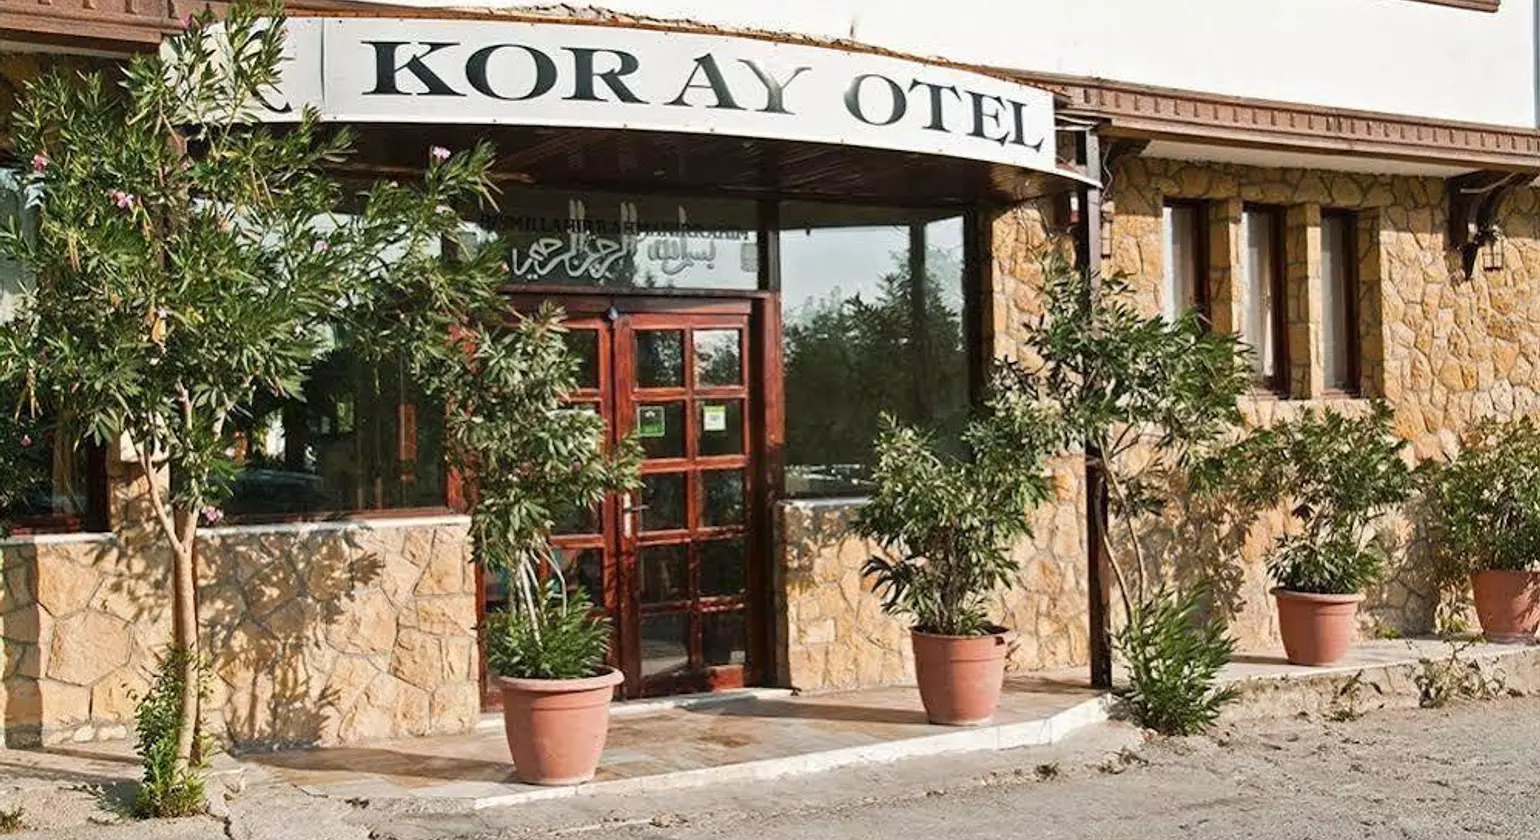 Koray Hotel